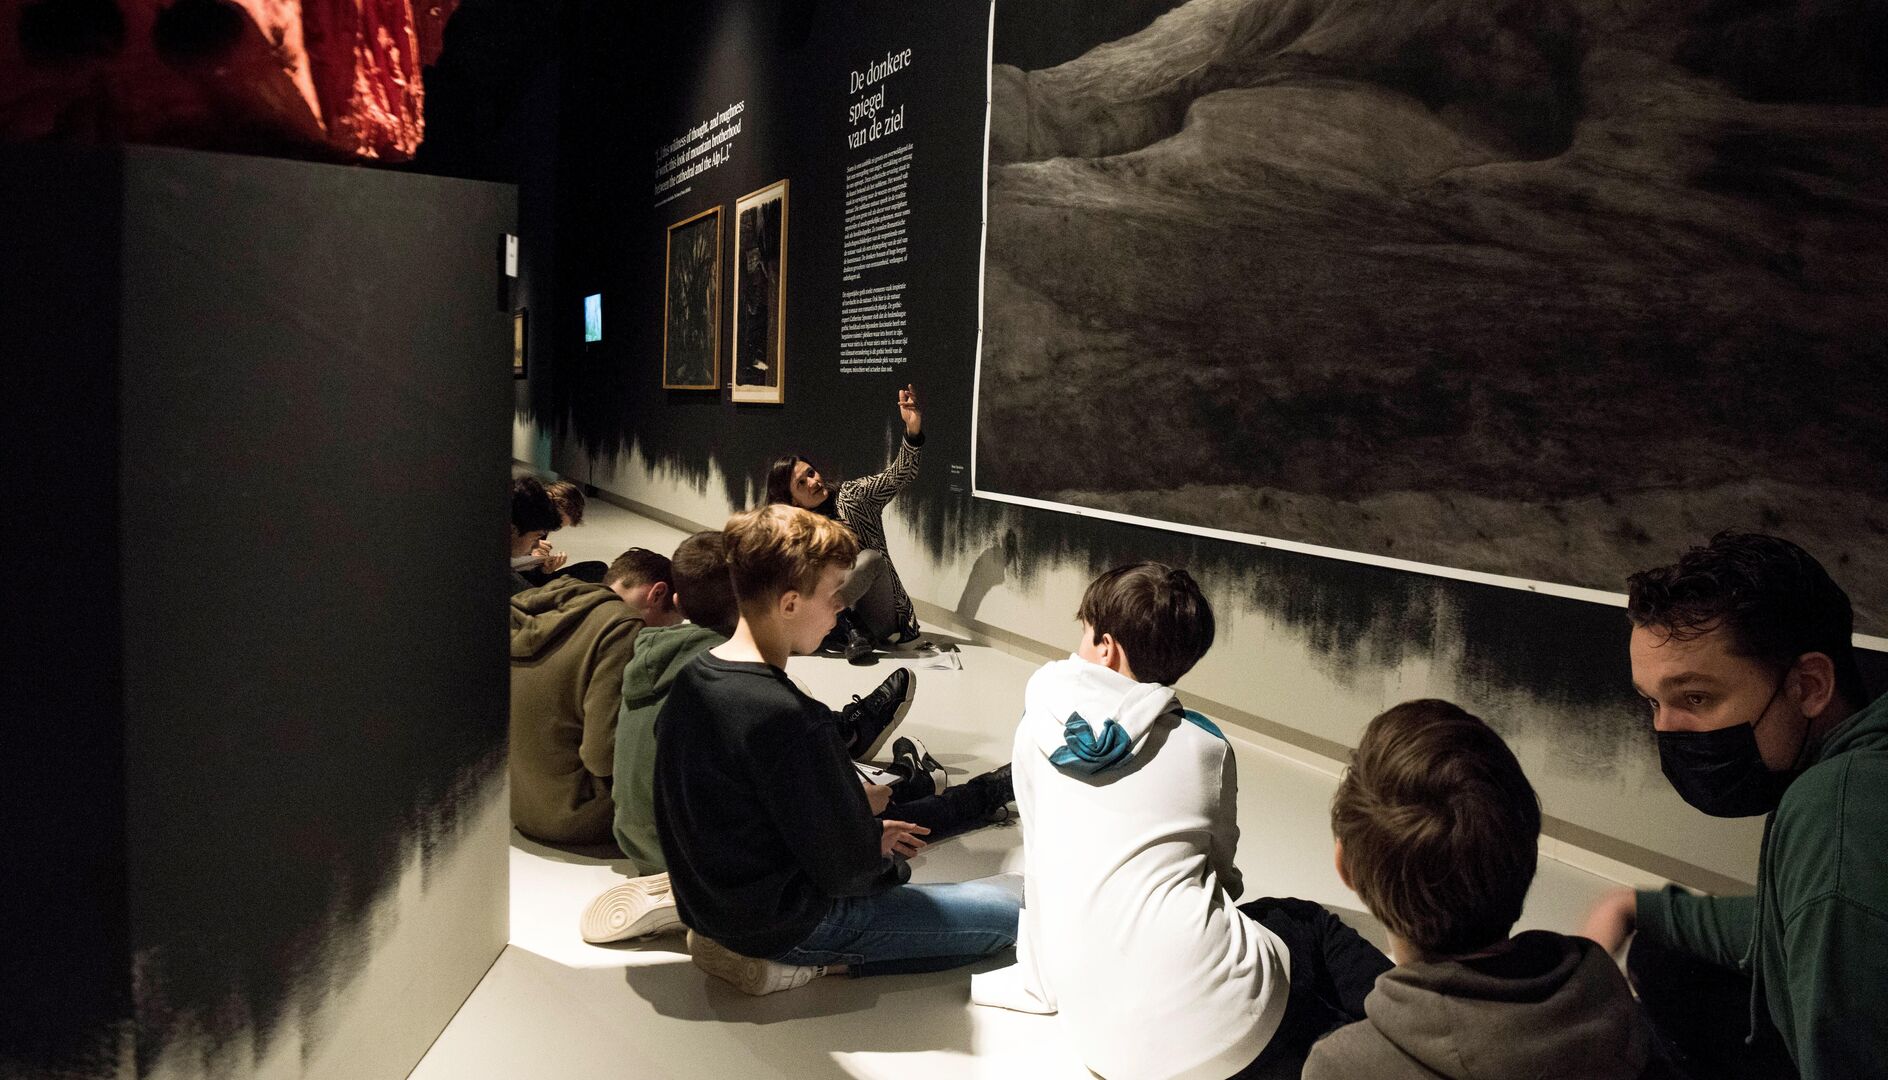 Ongezouten mening geven voor educatief aanbod Brabantse musea: vmbo-leerlingen aan zet